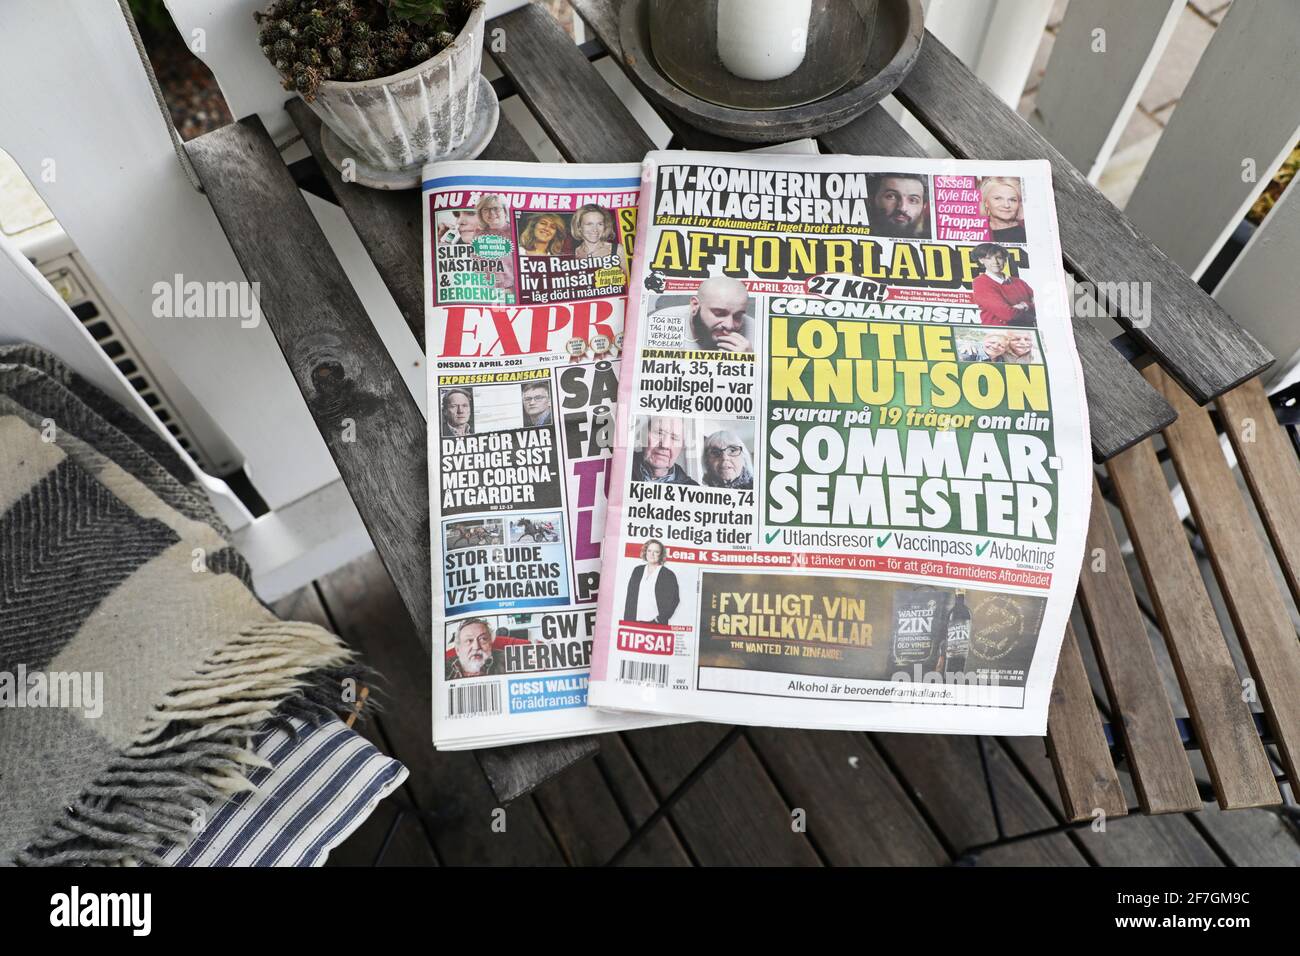 Die Abendzeitungen Aftonbladet und Expressen sind heute Tageszeitungen. Ab dieser Woche haben die Zeitungen um 6 Uhr eine Pressemitteilung für die Zeitung und die Redaktion wechselt zu den Bürozeiten. Nun werden die beiden Abendzeitungen zusammen mit den Tageszeitungen verteilt, schreibt die Zeitung Journalisten. Stockfoto